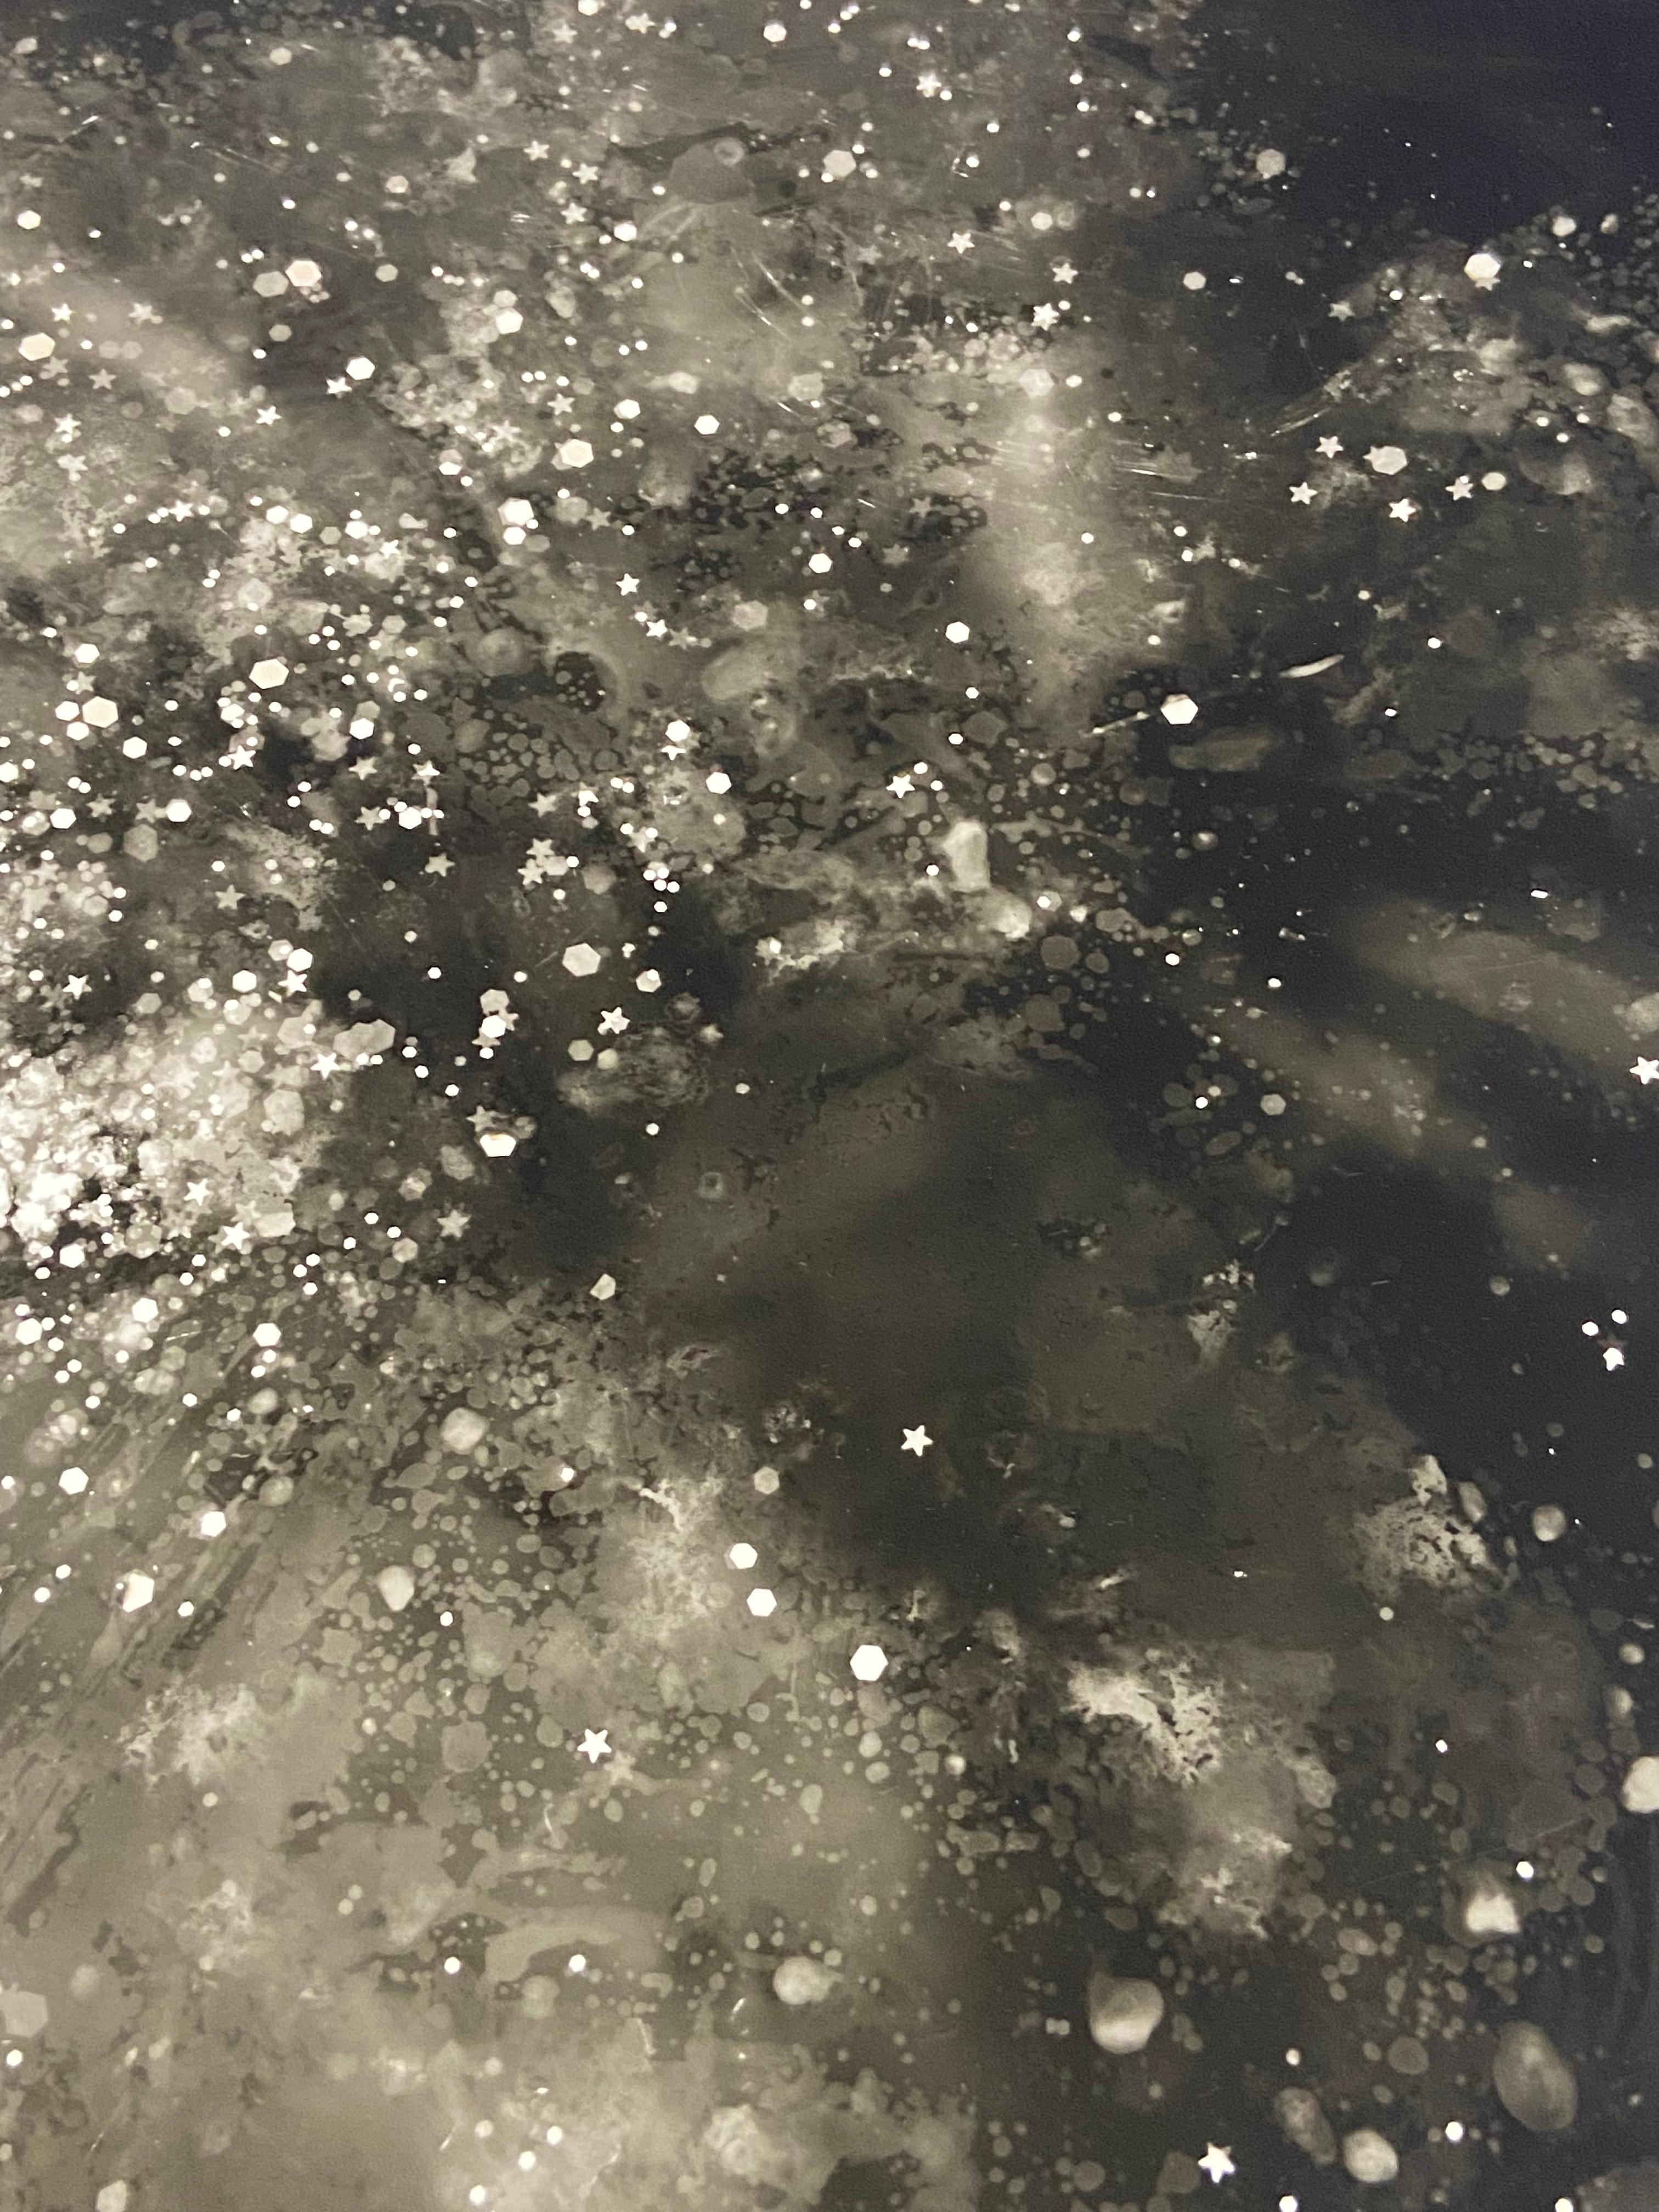 Einzigartiger Silbergelatineabzug (Fotogramm ohne Vergrößerungsgerät); Mehrfachbelichtung im Mischverfahren mit Schnee, Eis, Sand, Glitter und mehr. Reihe 